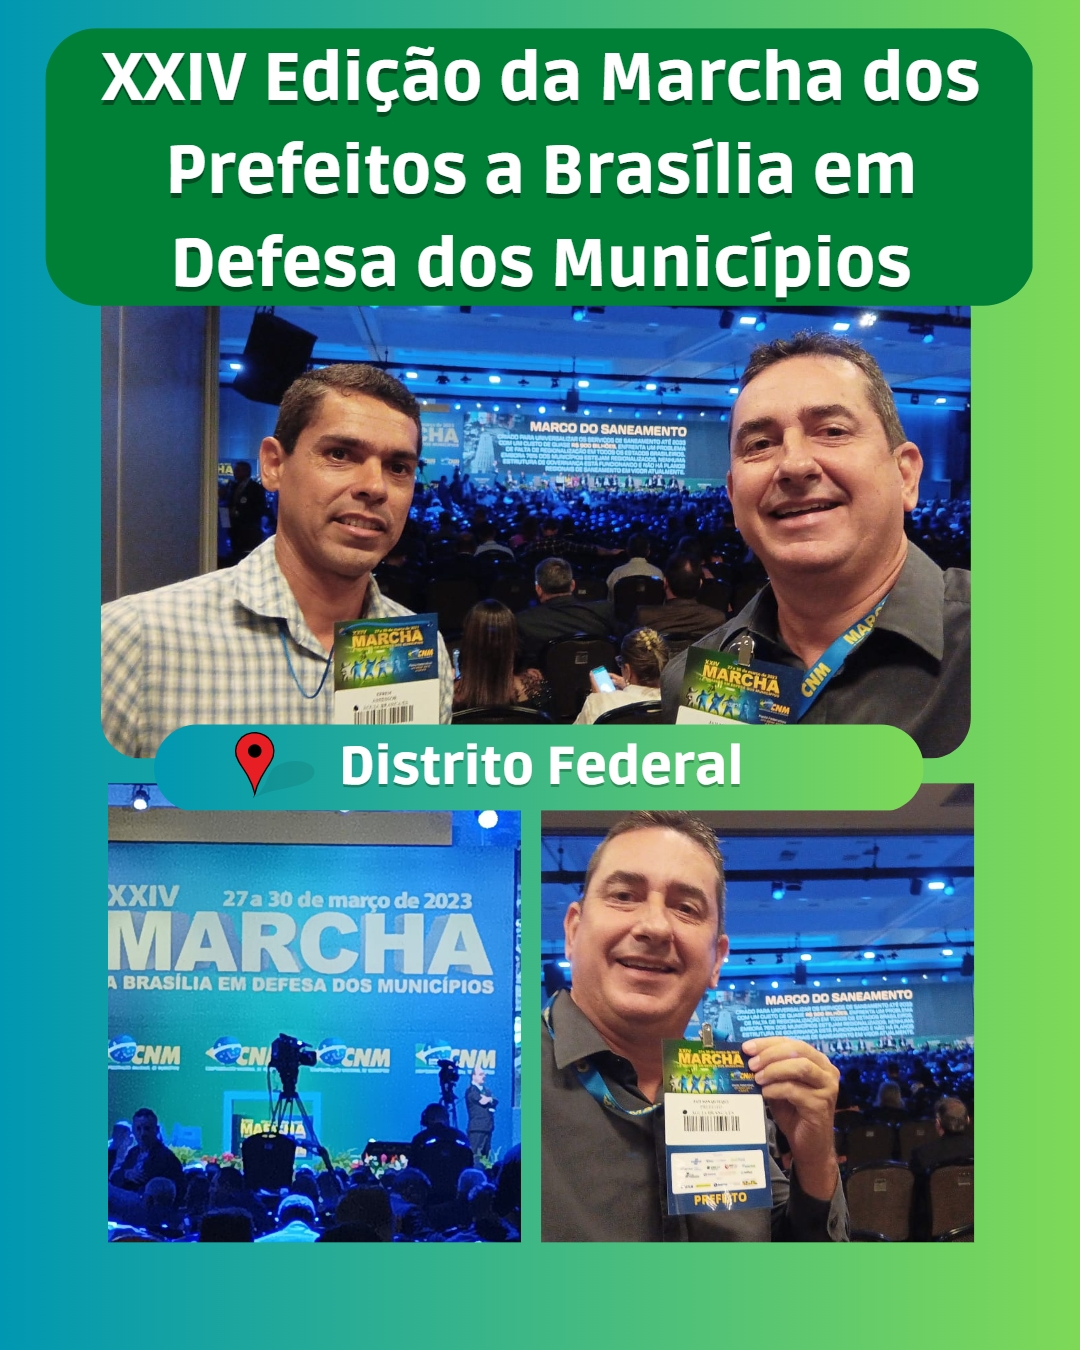 XXIV Edição da Marcha dos Prefeitos a Brasília em Defesa dos Municípios